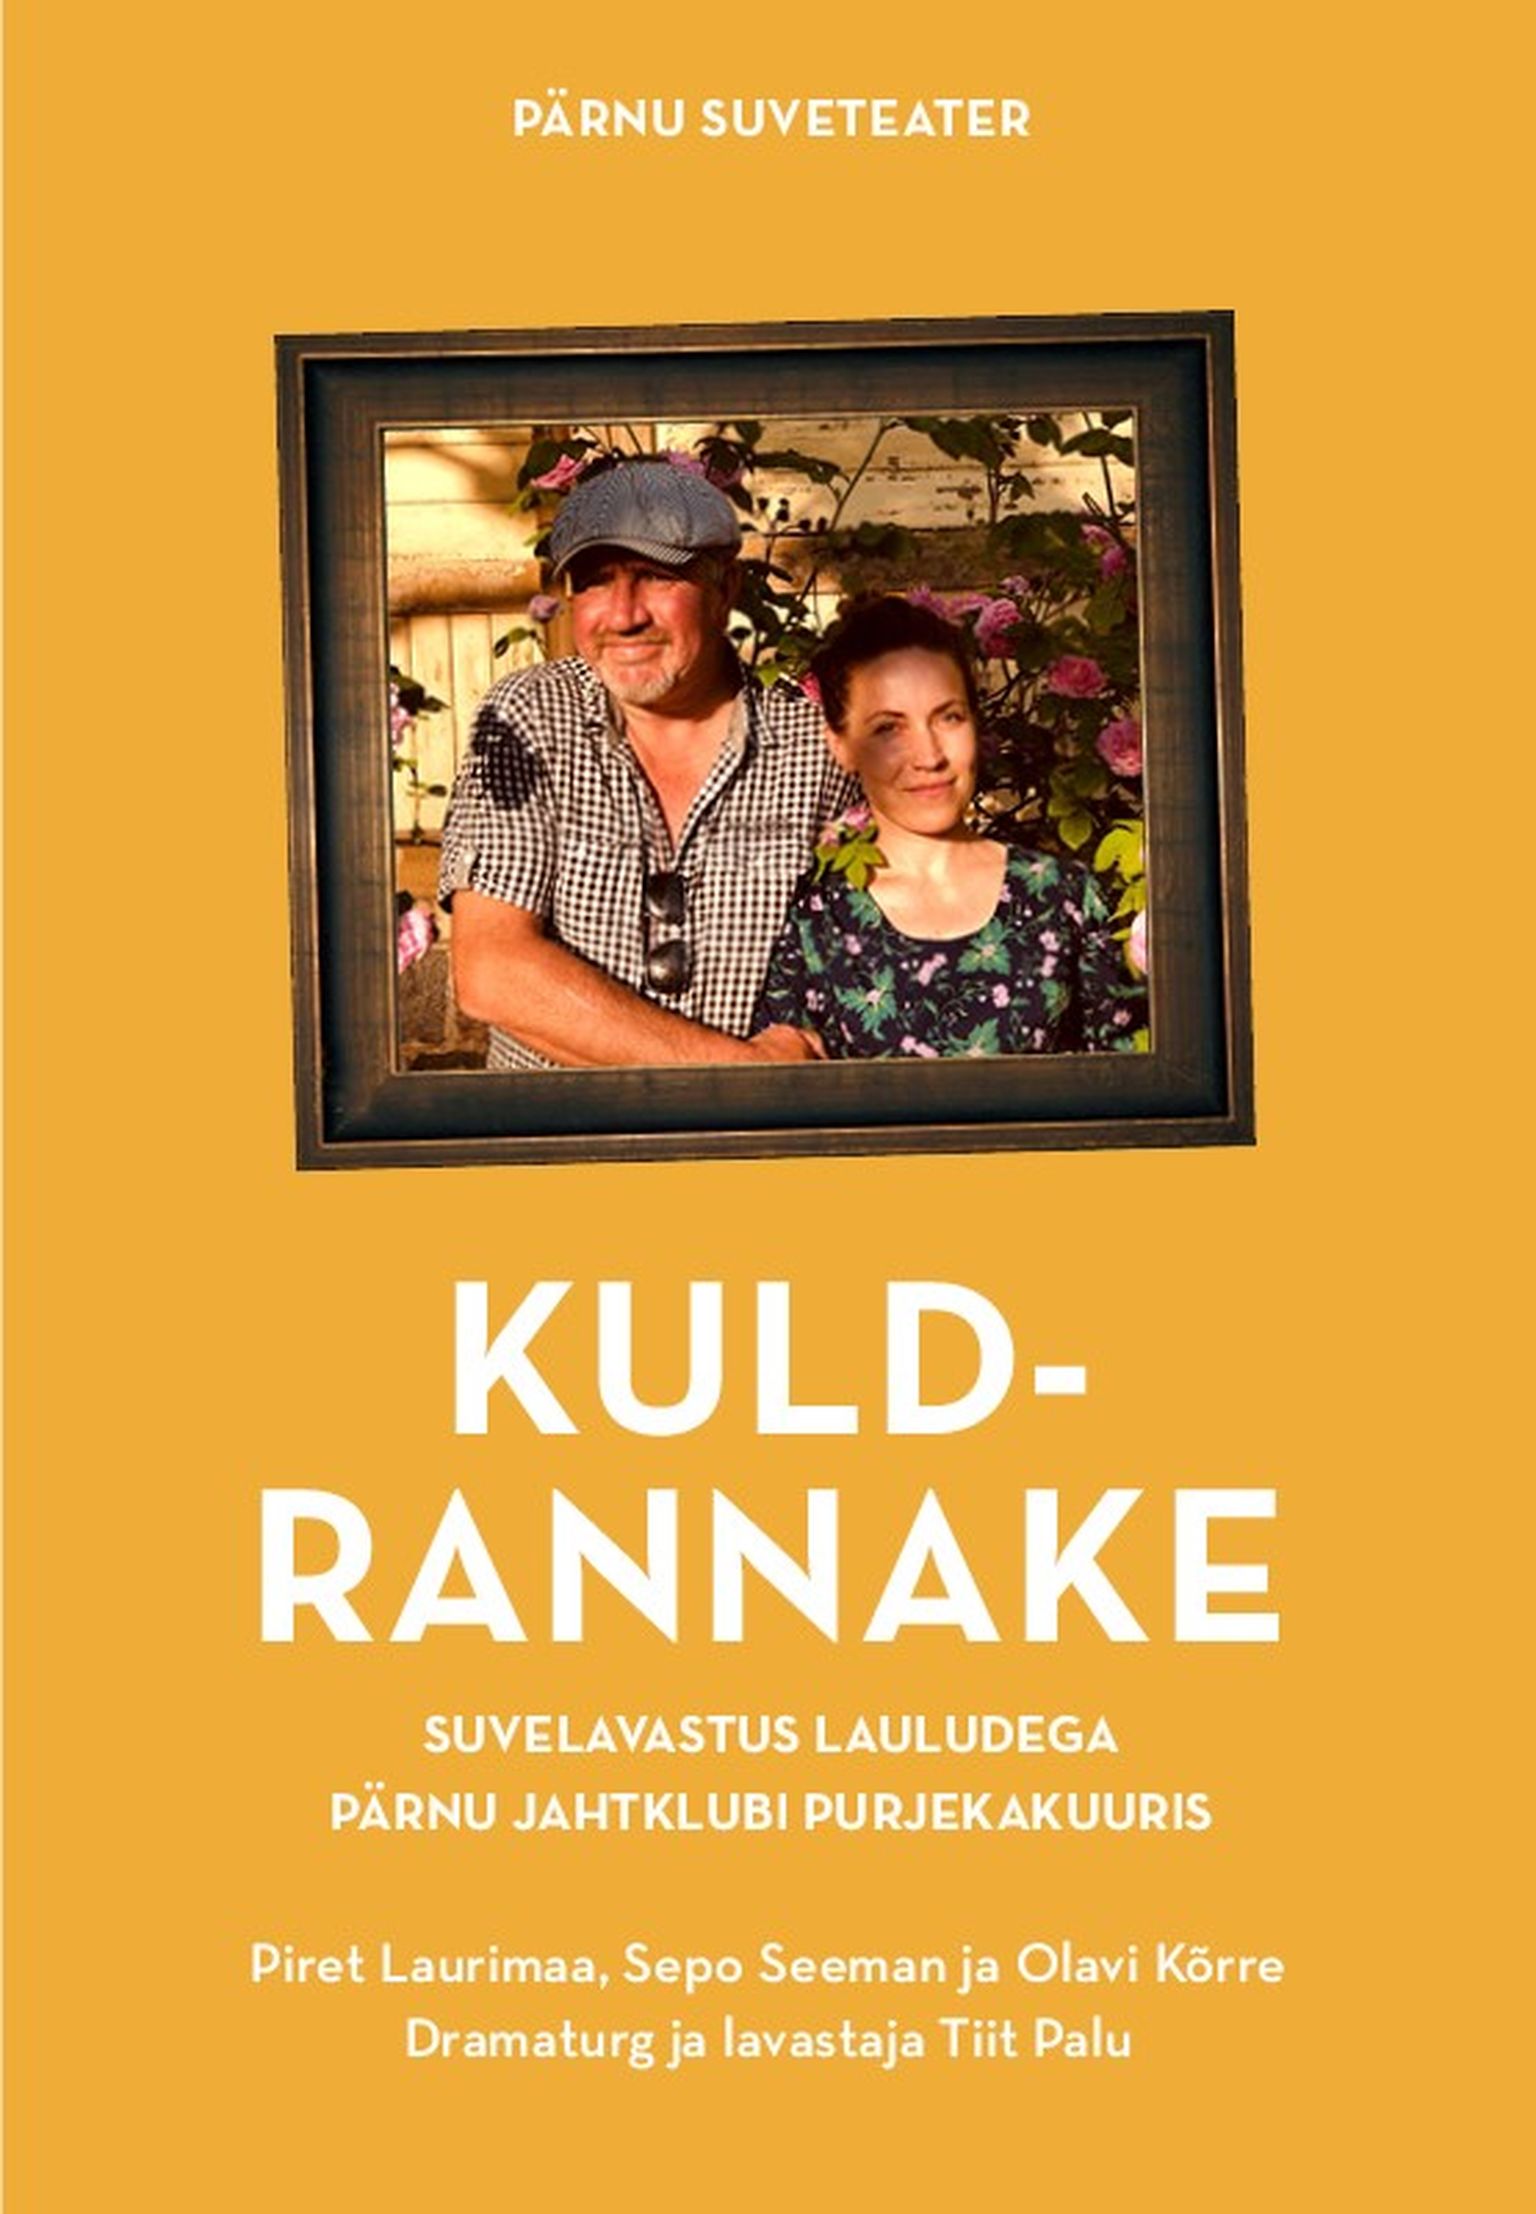 Pärnu Suveteater toob 8. juulil Pärnu Jahtsadama purjekakuuris välja lavastuse «Kuldrannake».